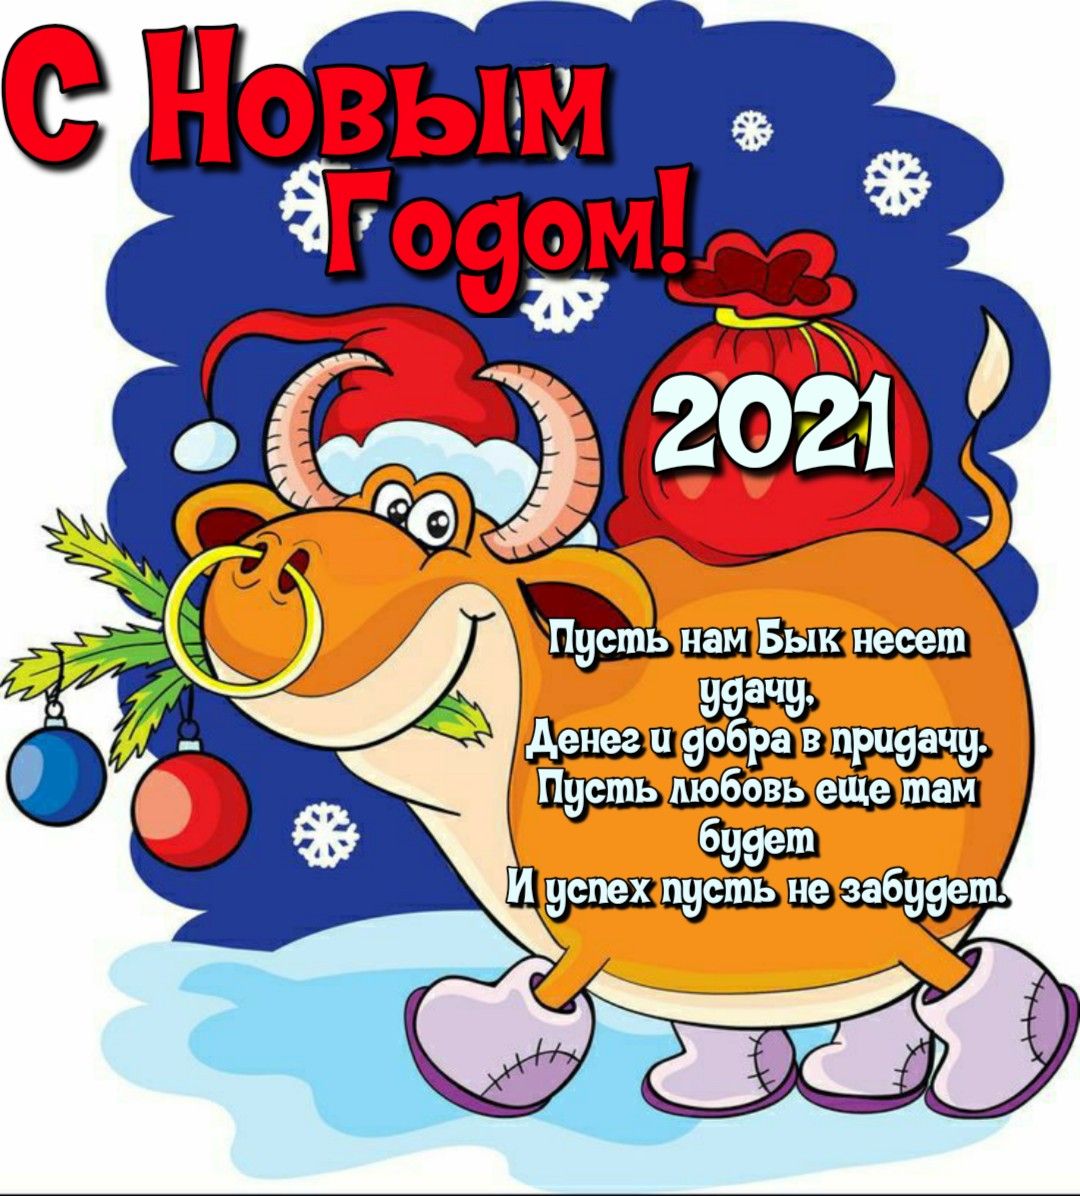 Новогодние статусы про год Быка в картинках - Поздравления с наступающим Новым 2021 годом годом Быка смешные шуточные - Стихи про Новый год Быка